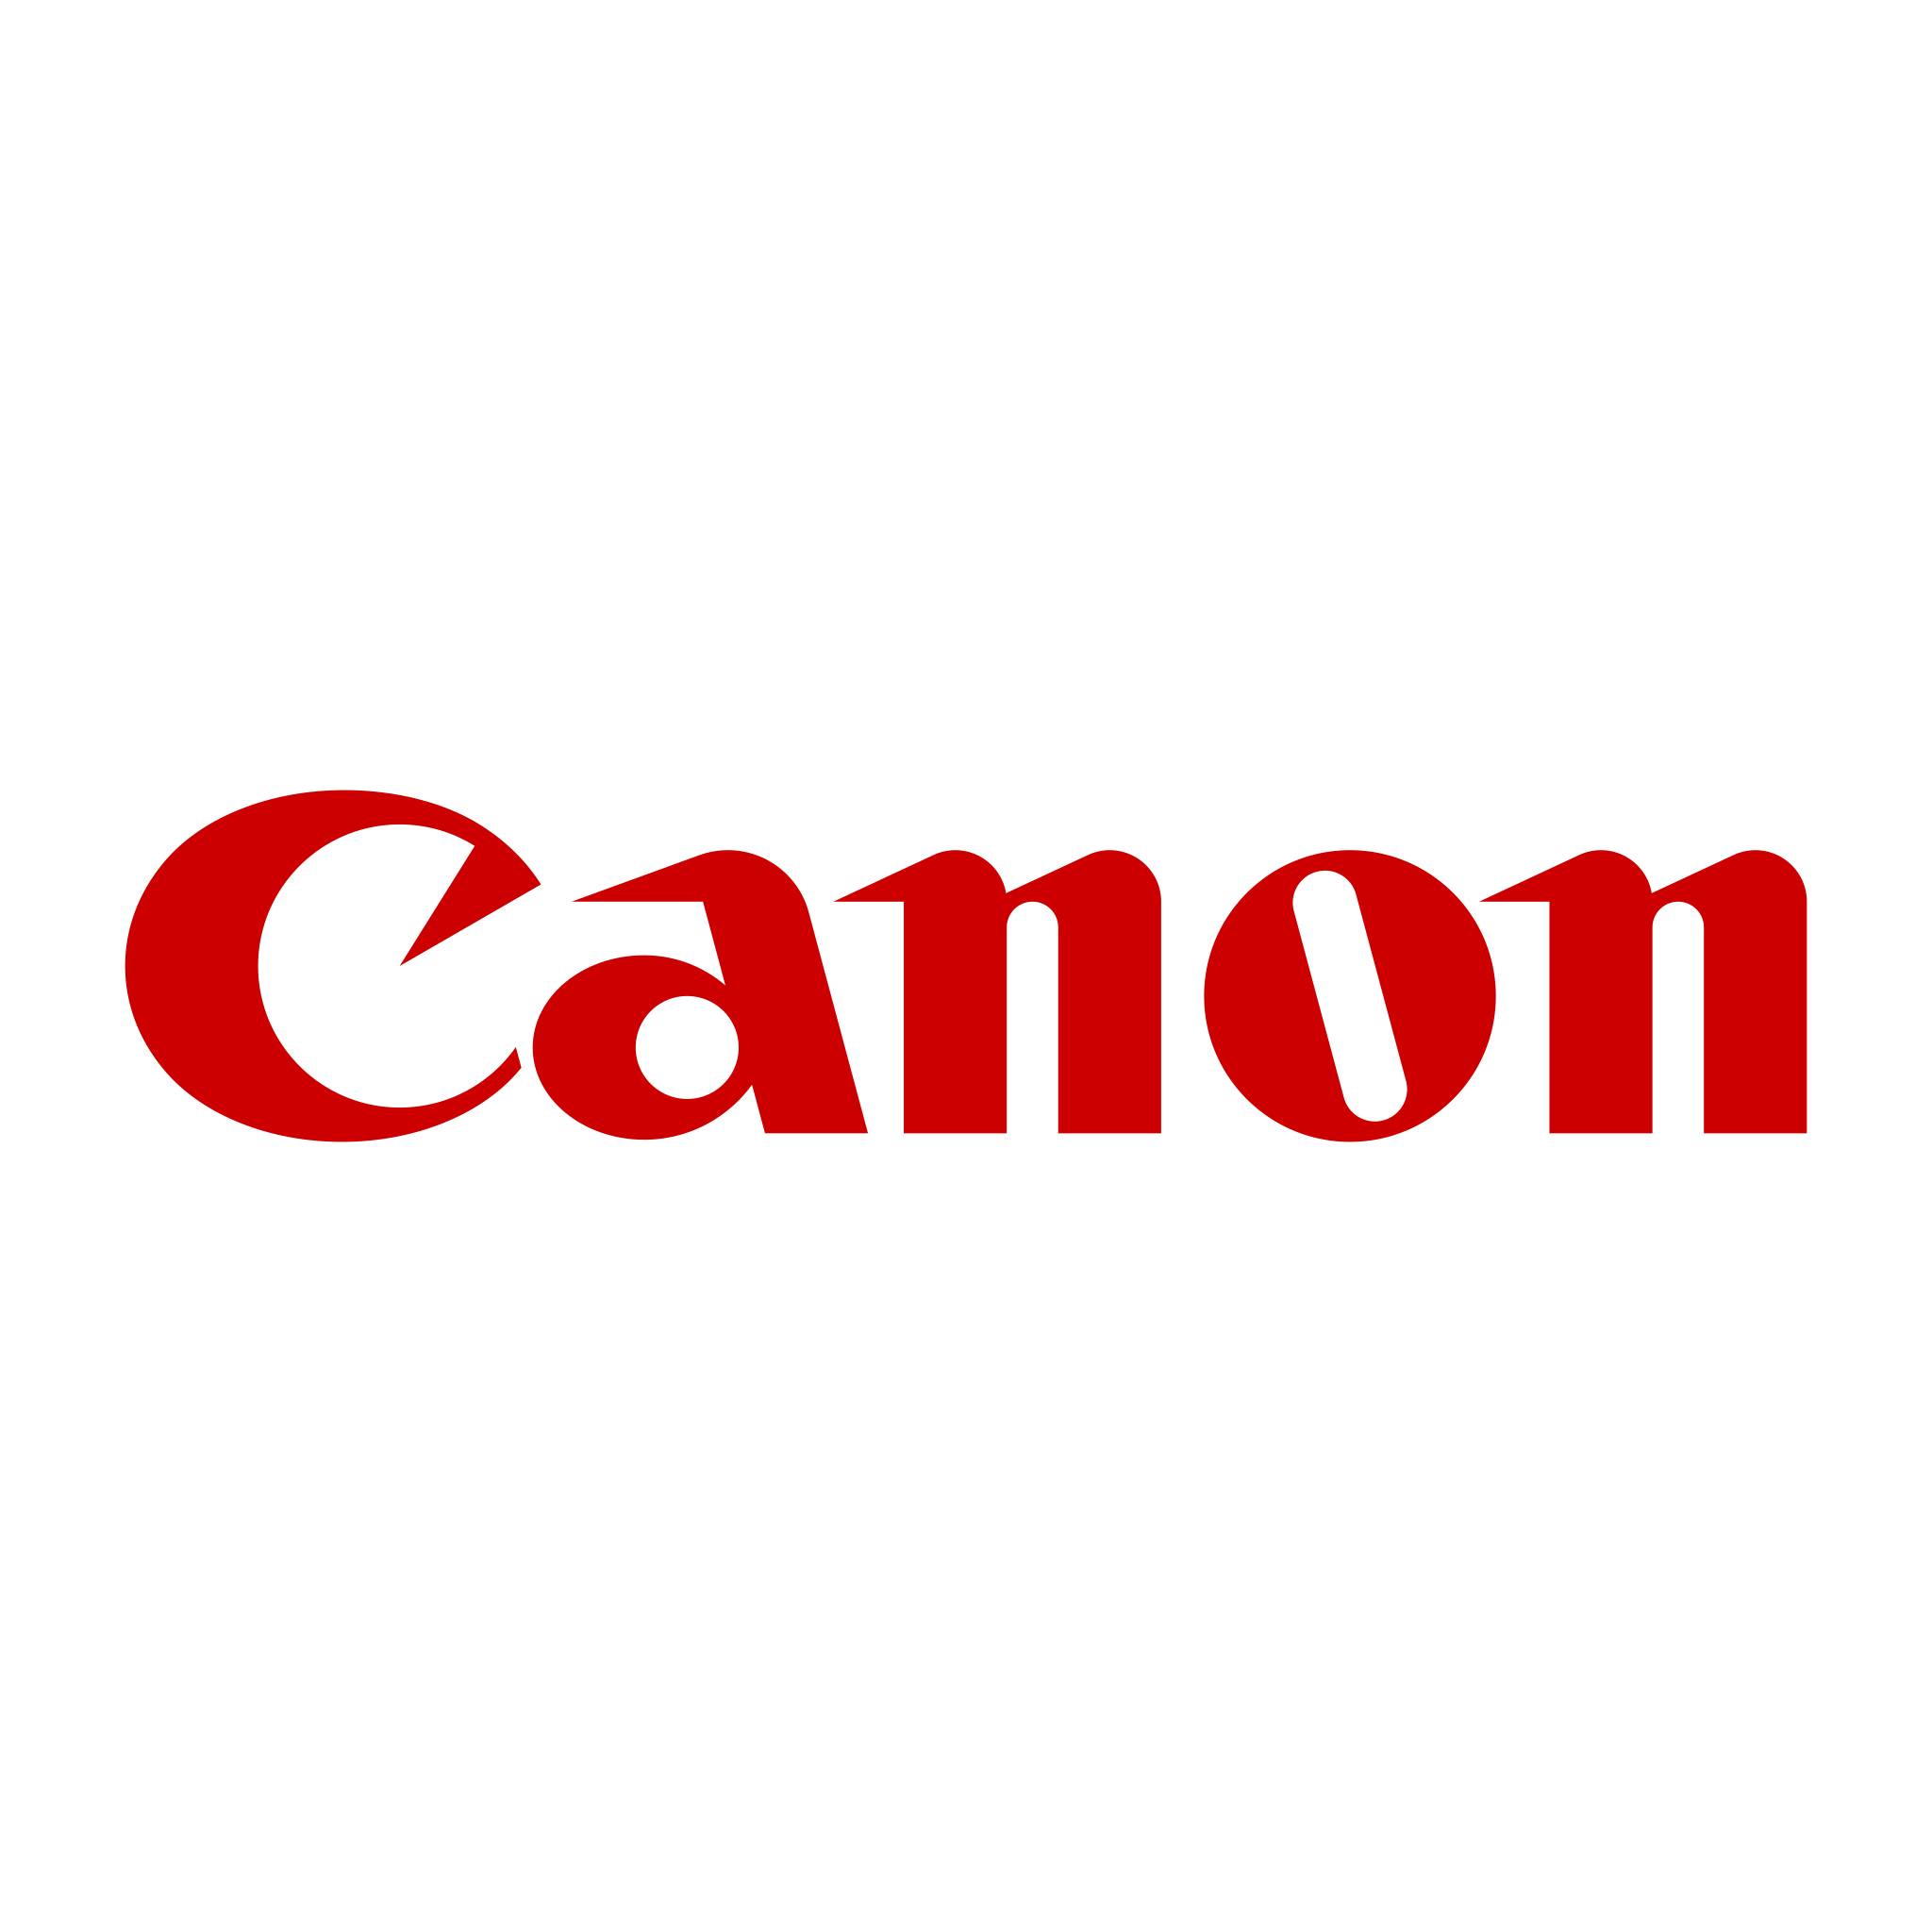 Logo de Canon SVG